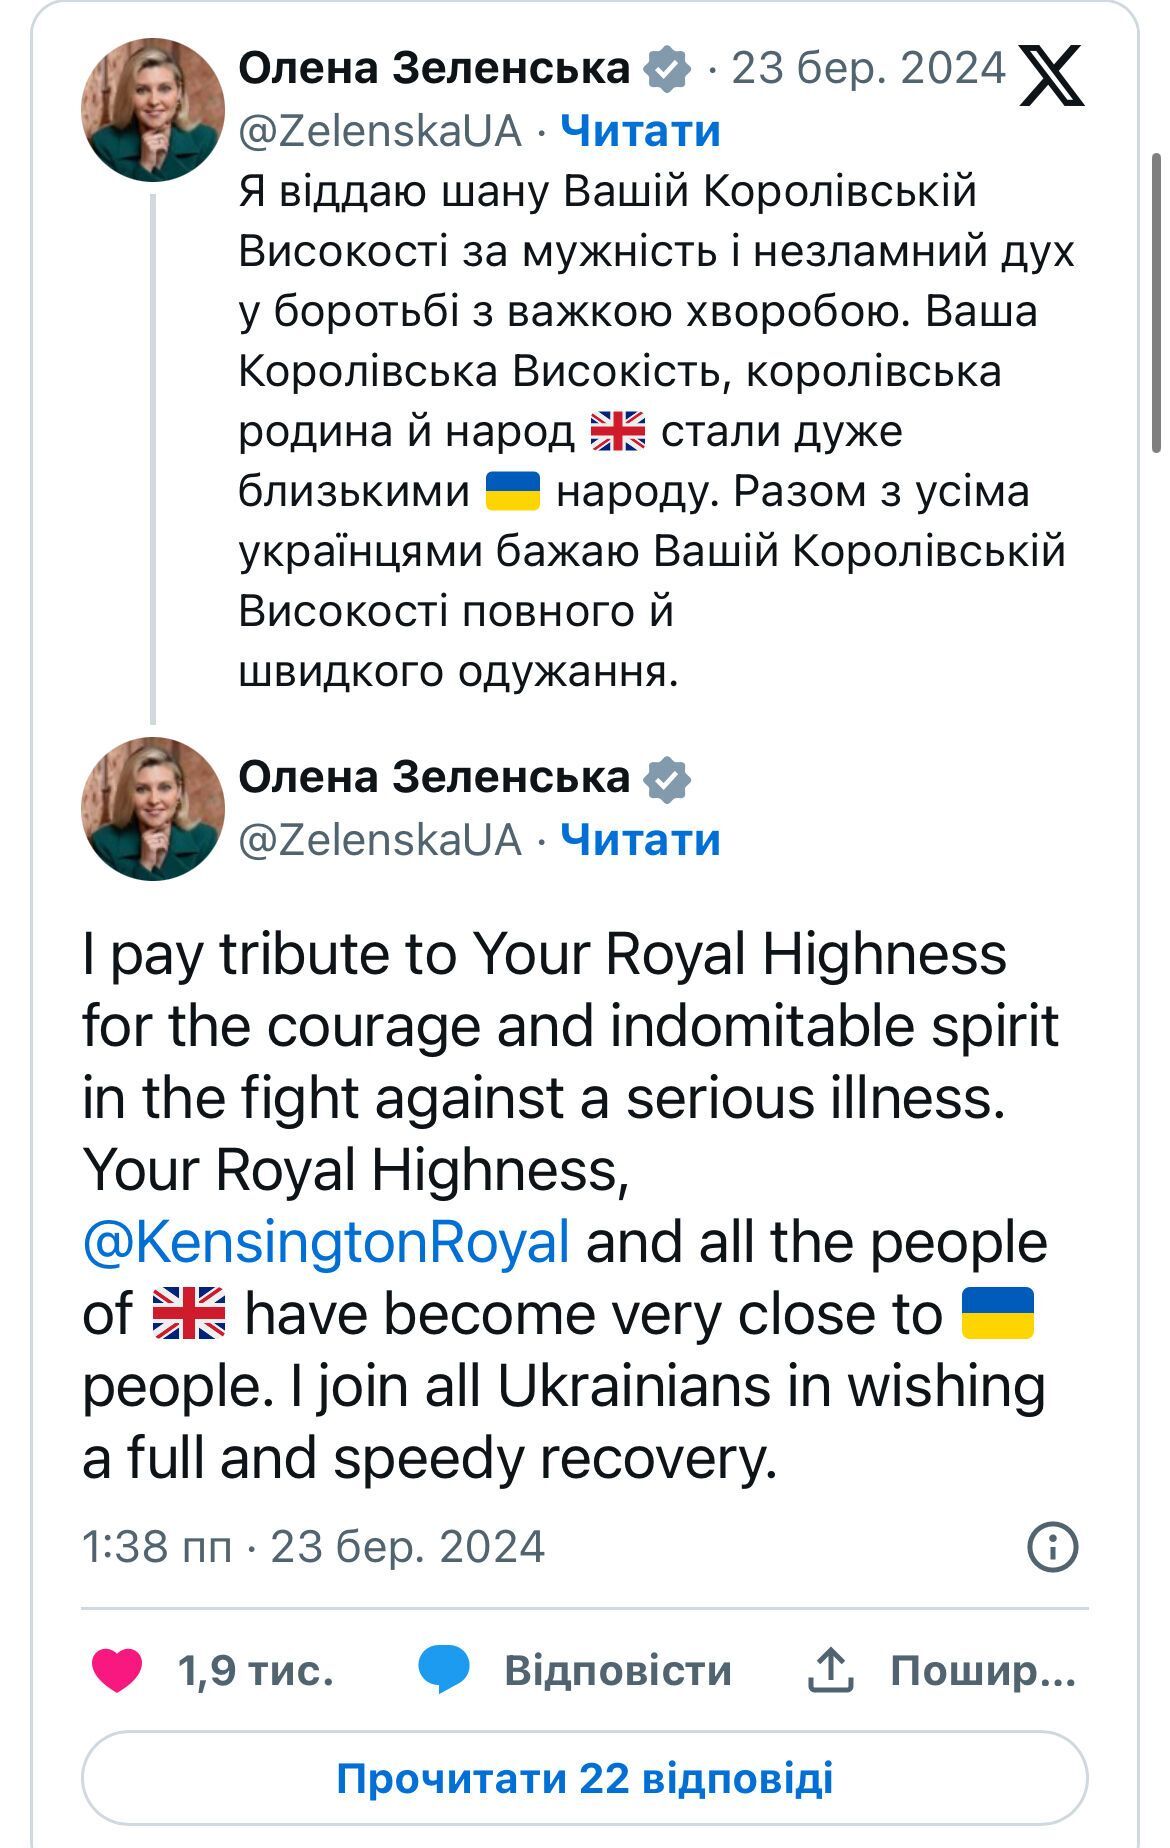 Зеленская выразила свою поддержку Миддлтон после распространения новостей о ее серьезной болезни